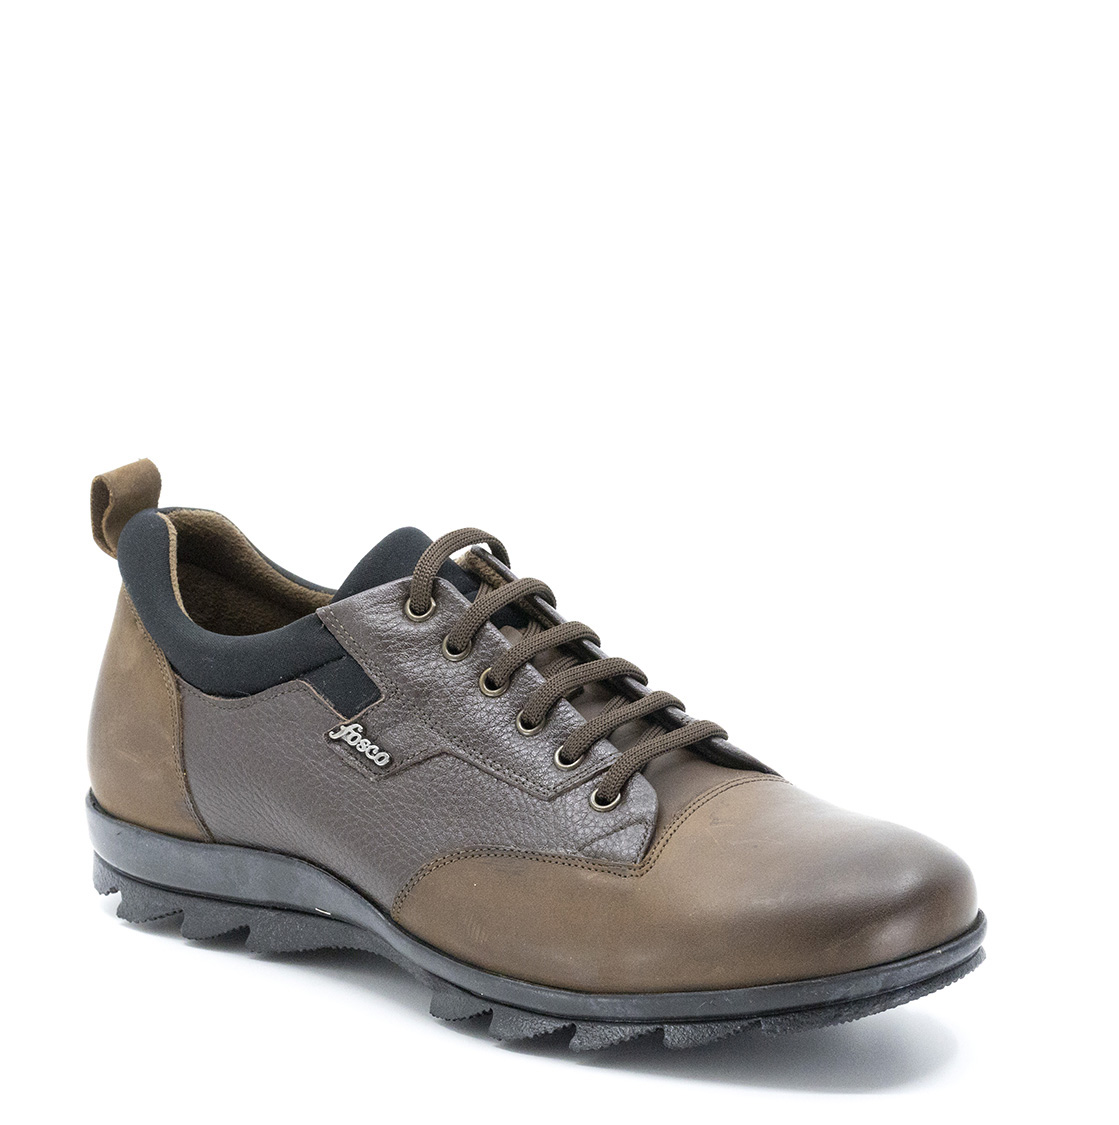 Bağcıklı Hakiki Deri Kauçuk Taban Sıcak Astar Kışlık Erkek Ayakkabı, Renk: Kahverengi, Beden: 44